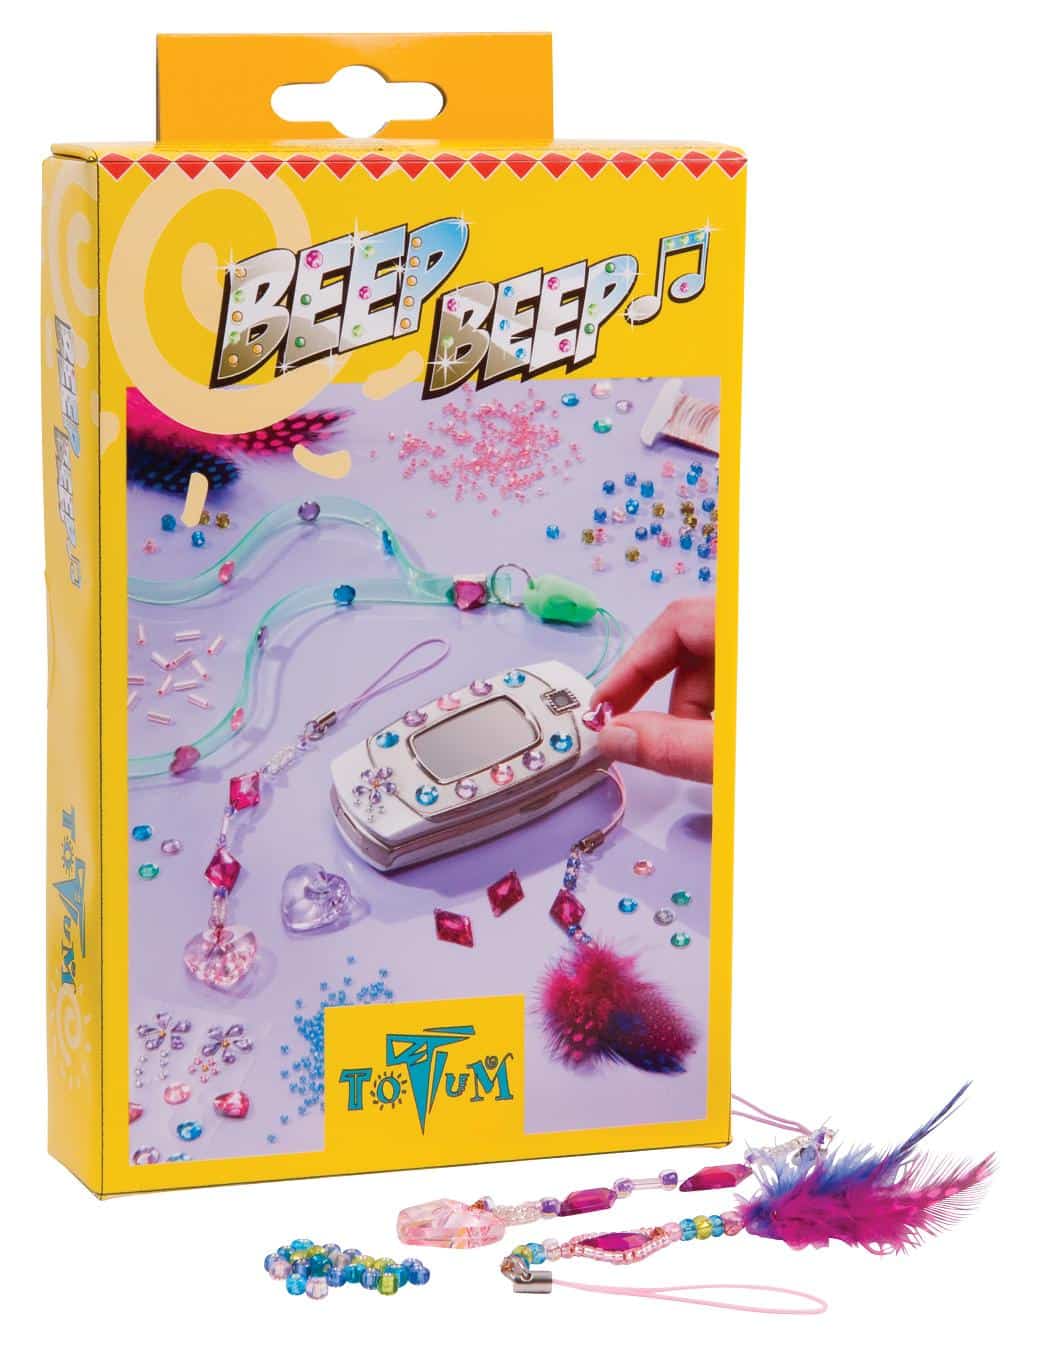 Beep Beep - Set creativ Totum de mărgele colorate pentru decor telefon mobil